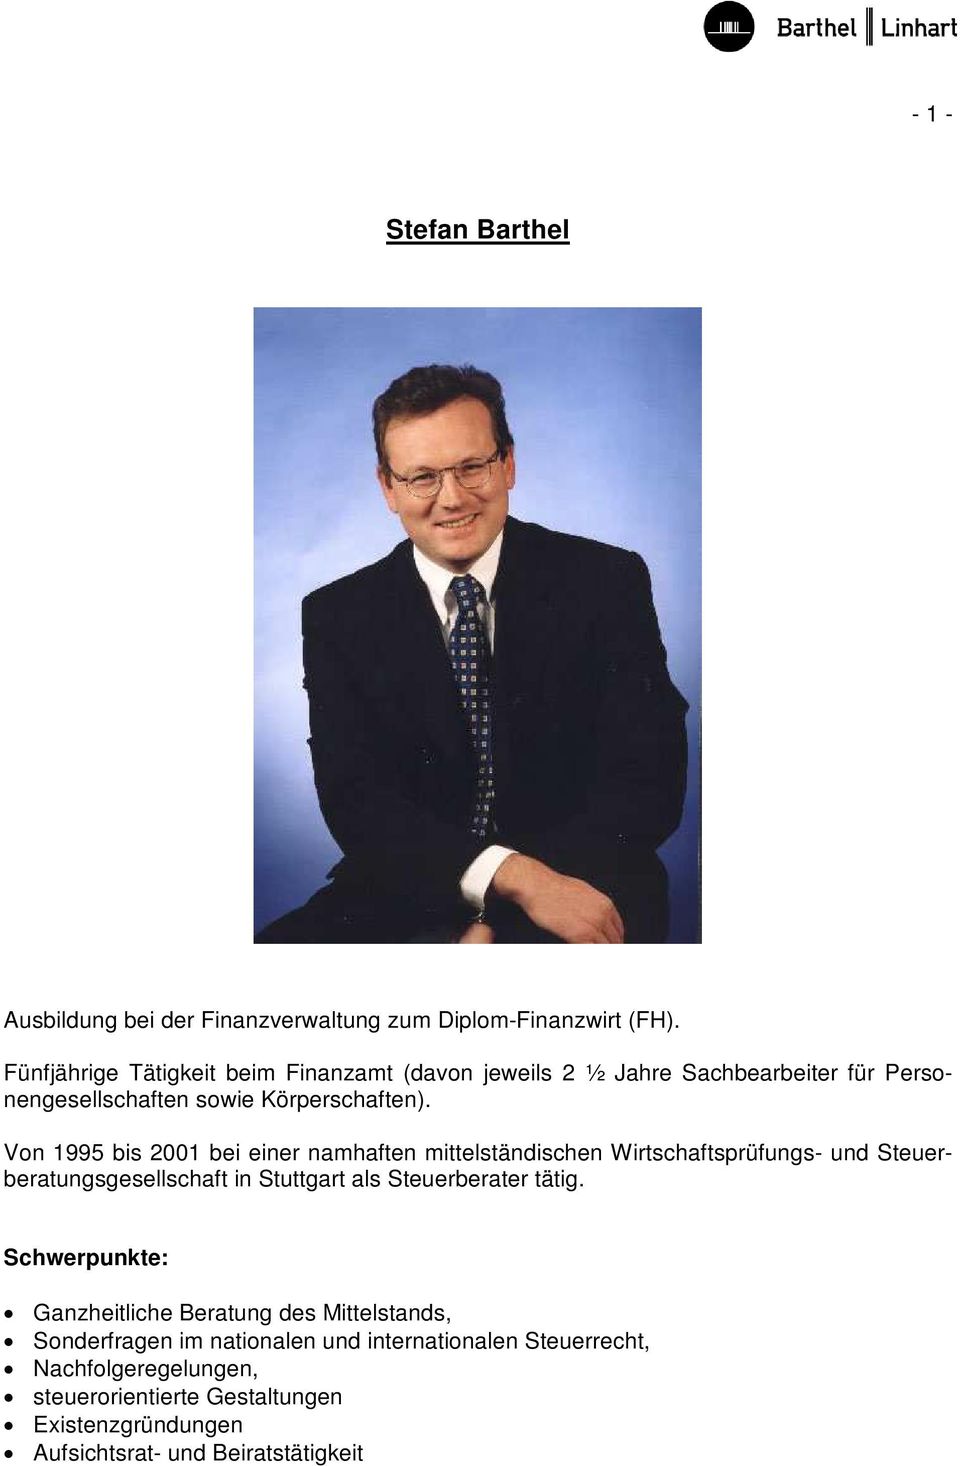 Von 1995 bis 2001 bei einer namhaften mittelständischen Wirtschaftsprüfungs- und Steuerberatungsgesellschaft in Stuttgart als Steuerberater